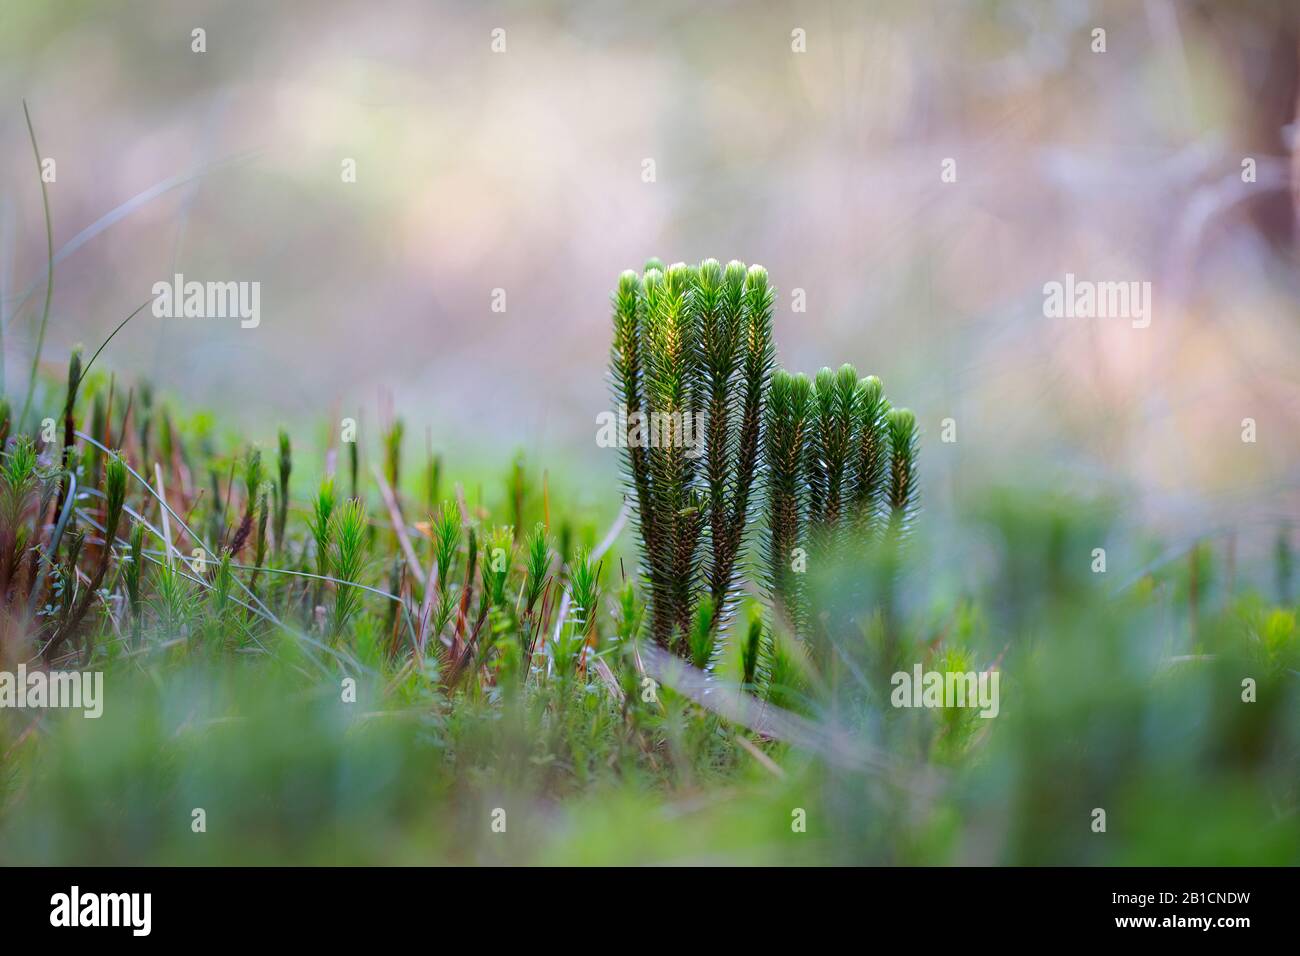 fir clubmoss, mountain clubmoss, fir-clubmoss (Huperzia selago, Lycopodium selago), in a forest, Netherlands, Drenthe Stock Photo